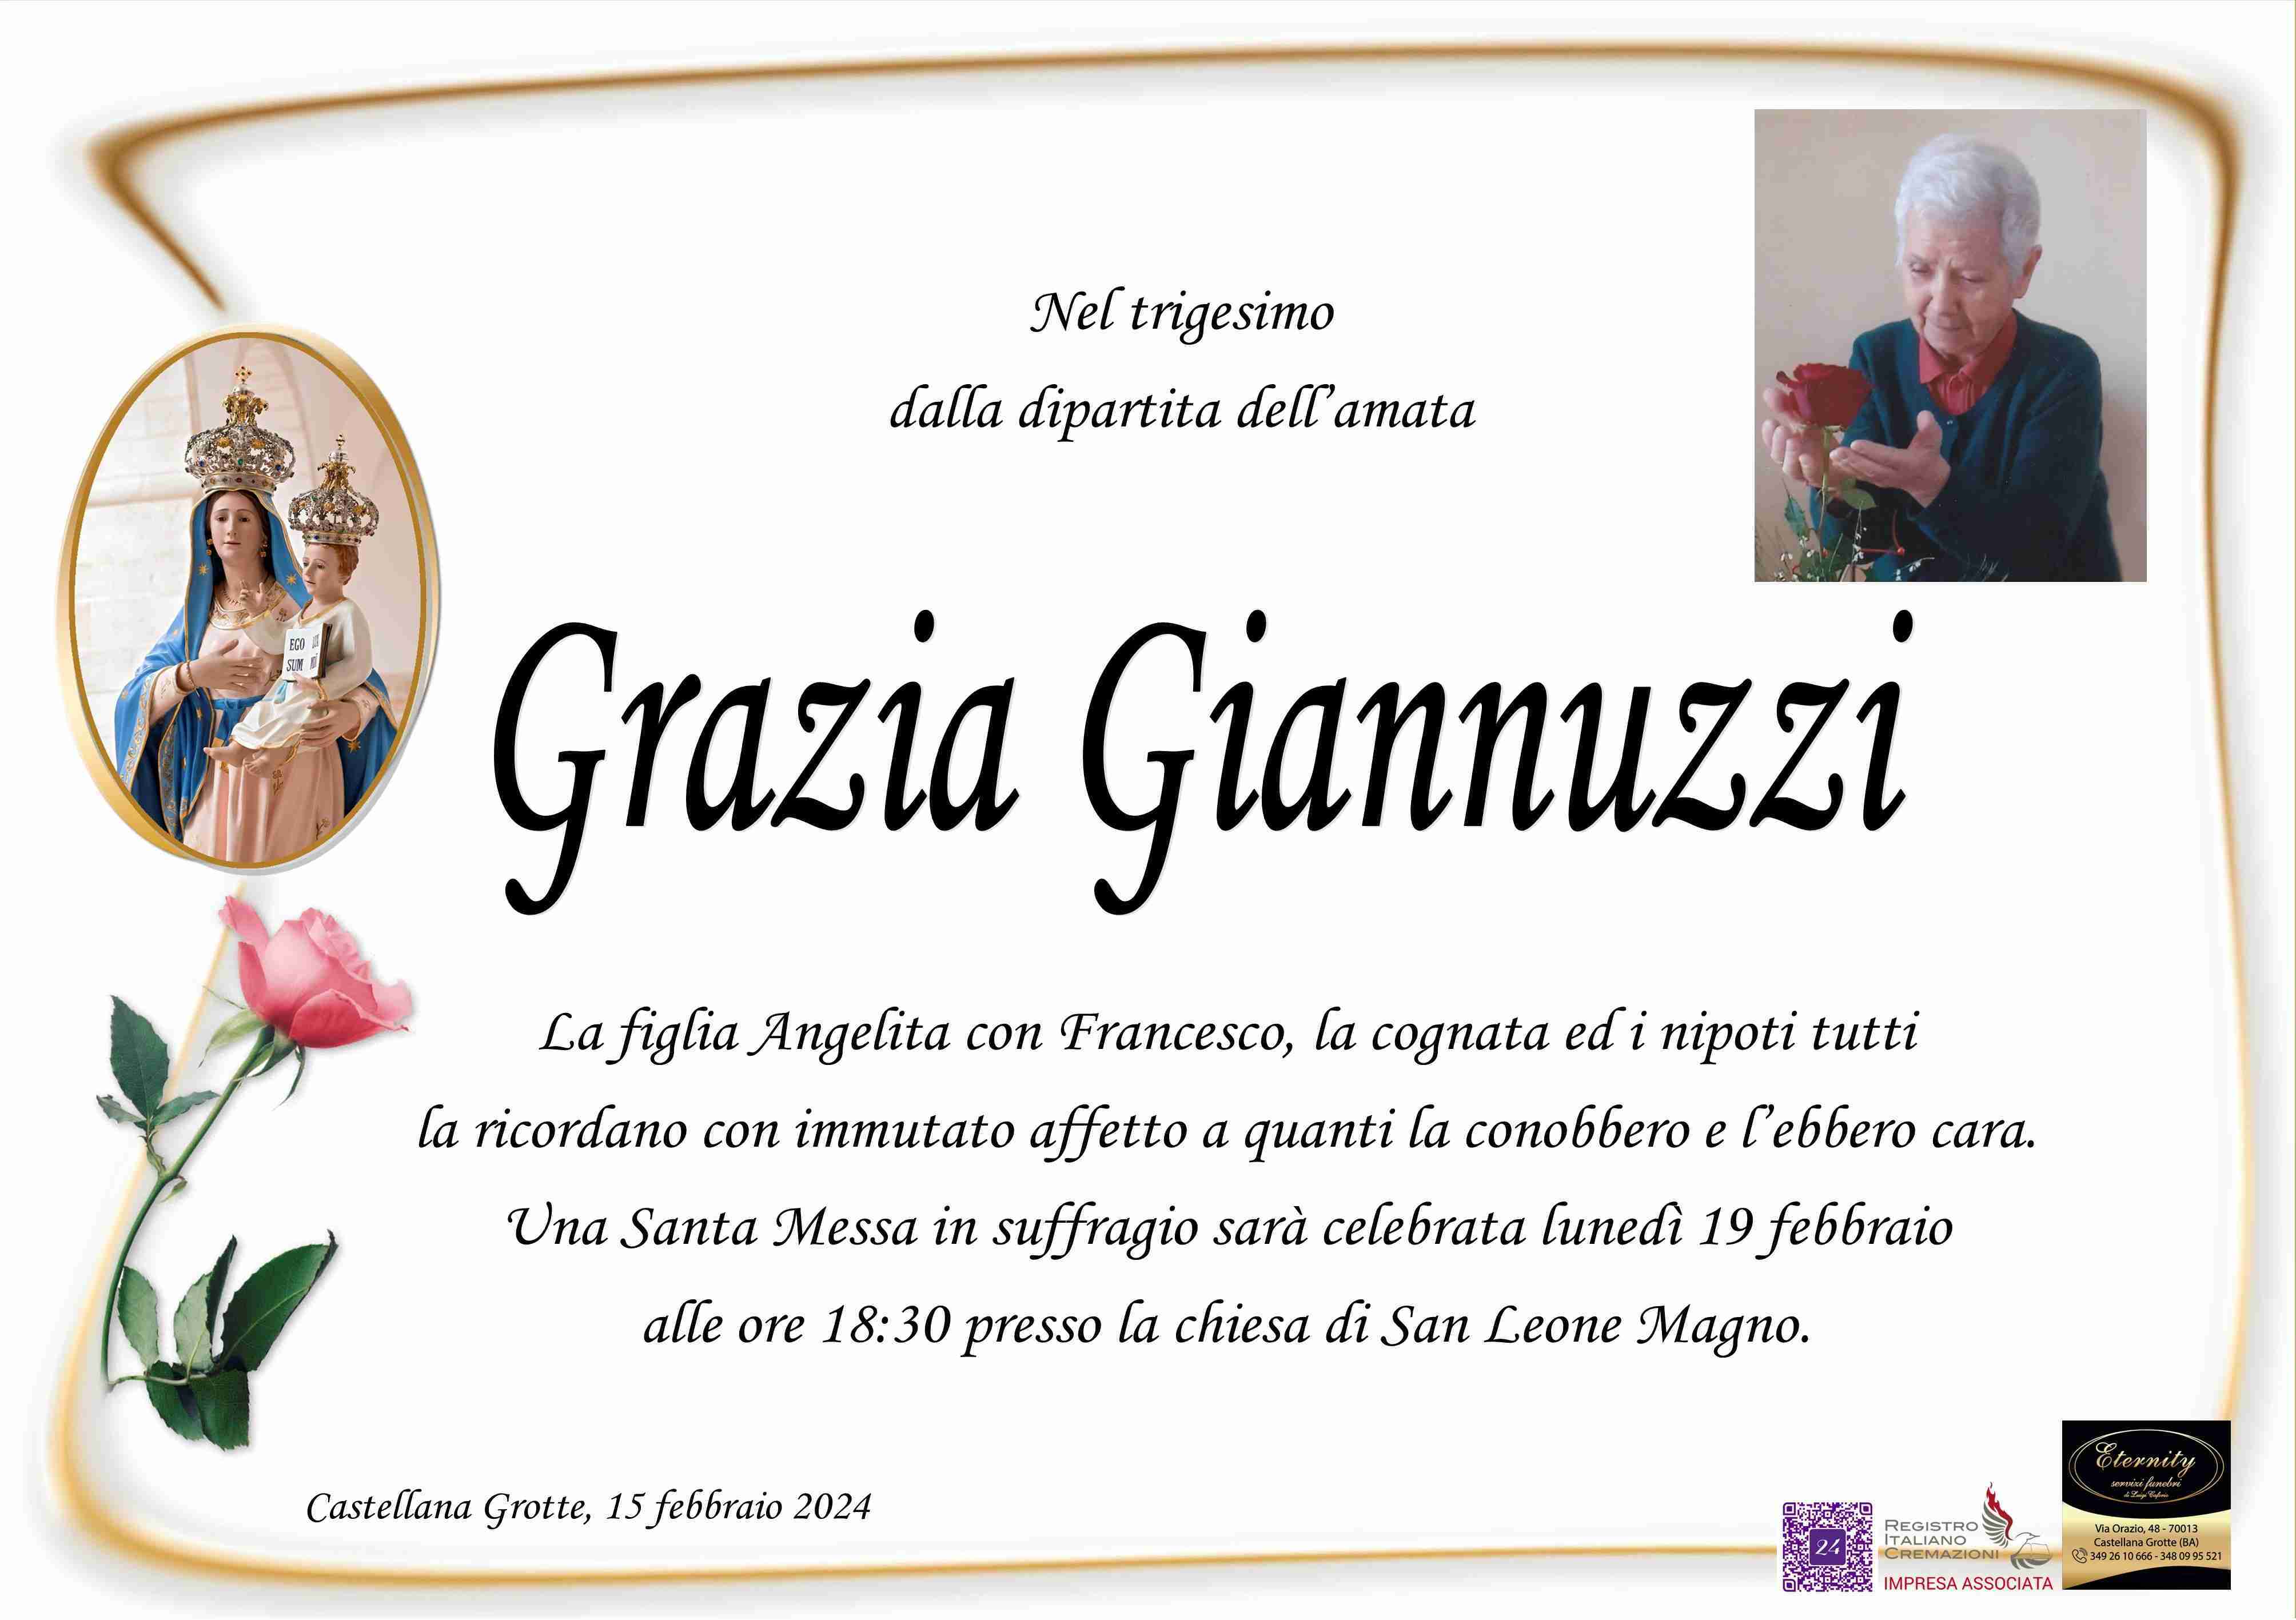 Grazia Giannuzzi